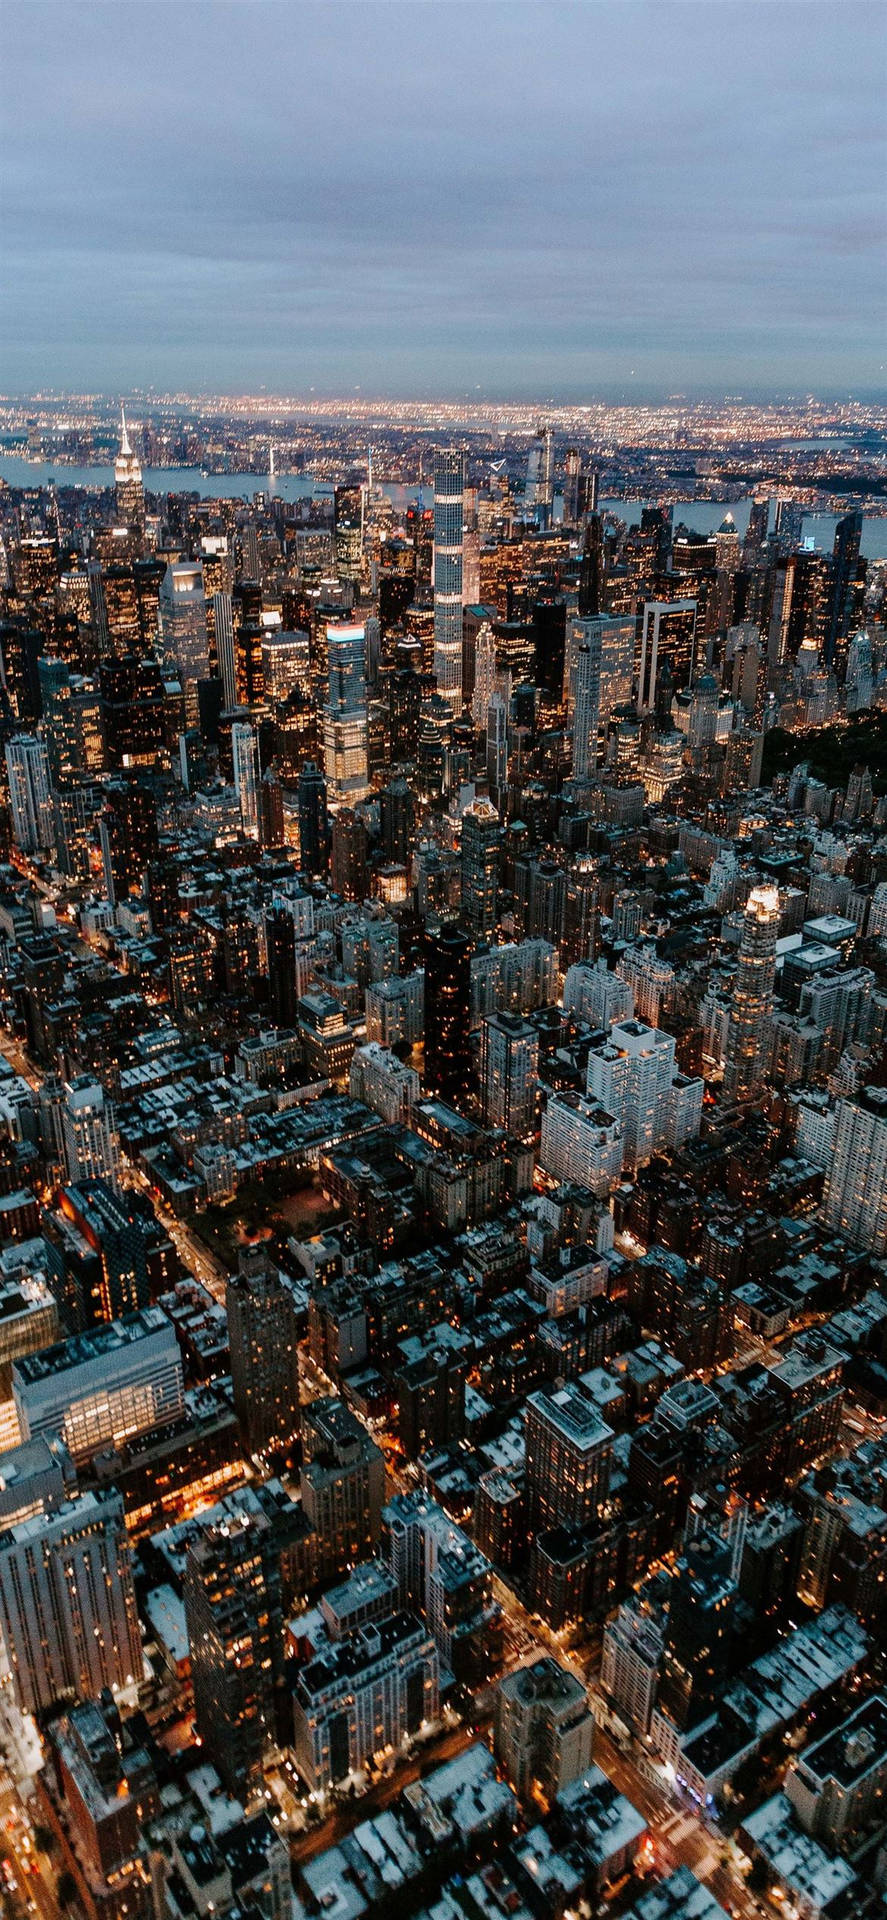 Vistaaérea De La Ciudad De Nueva York En Iphone X. Fondo de pantalla